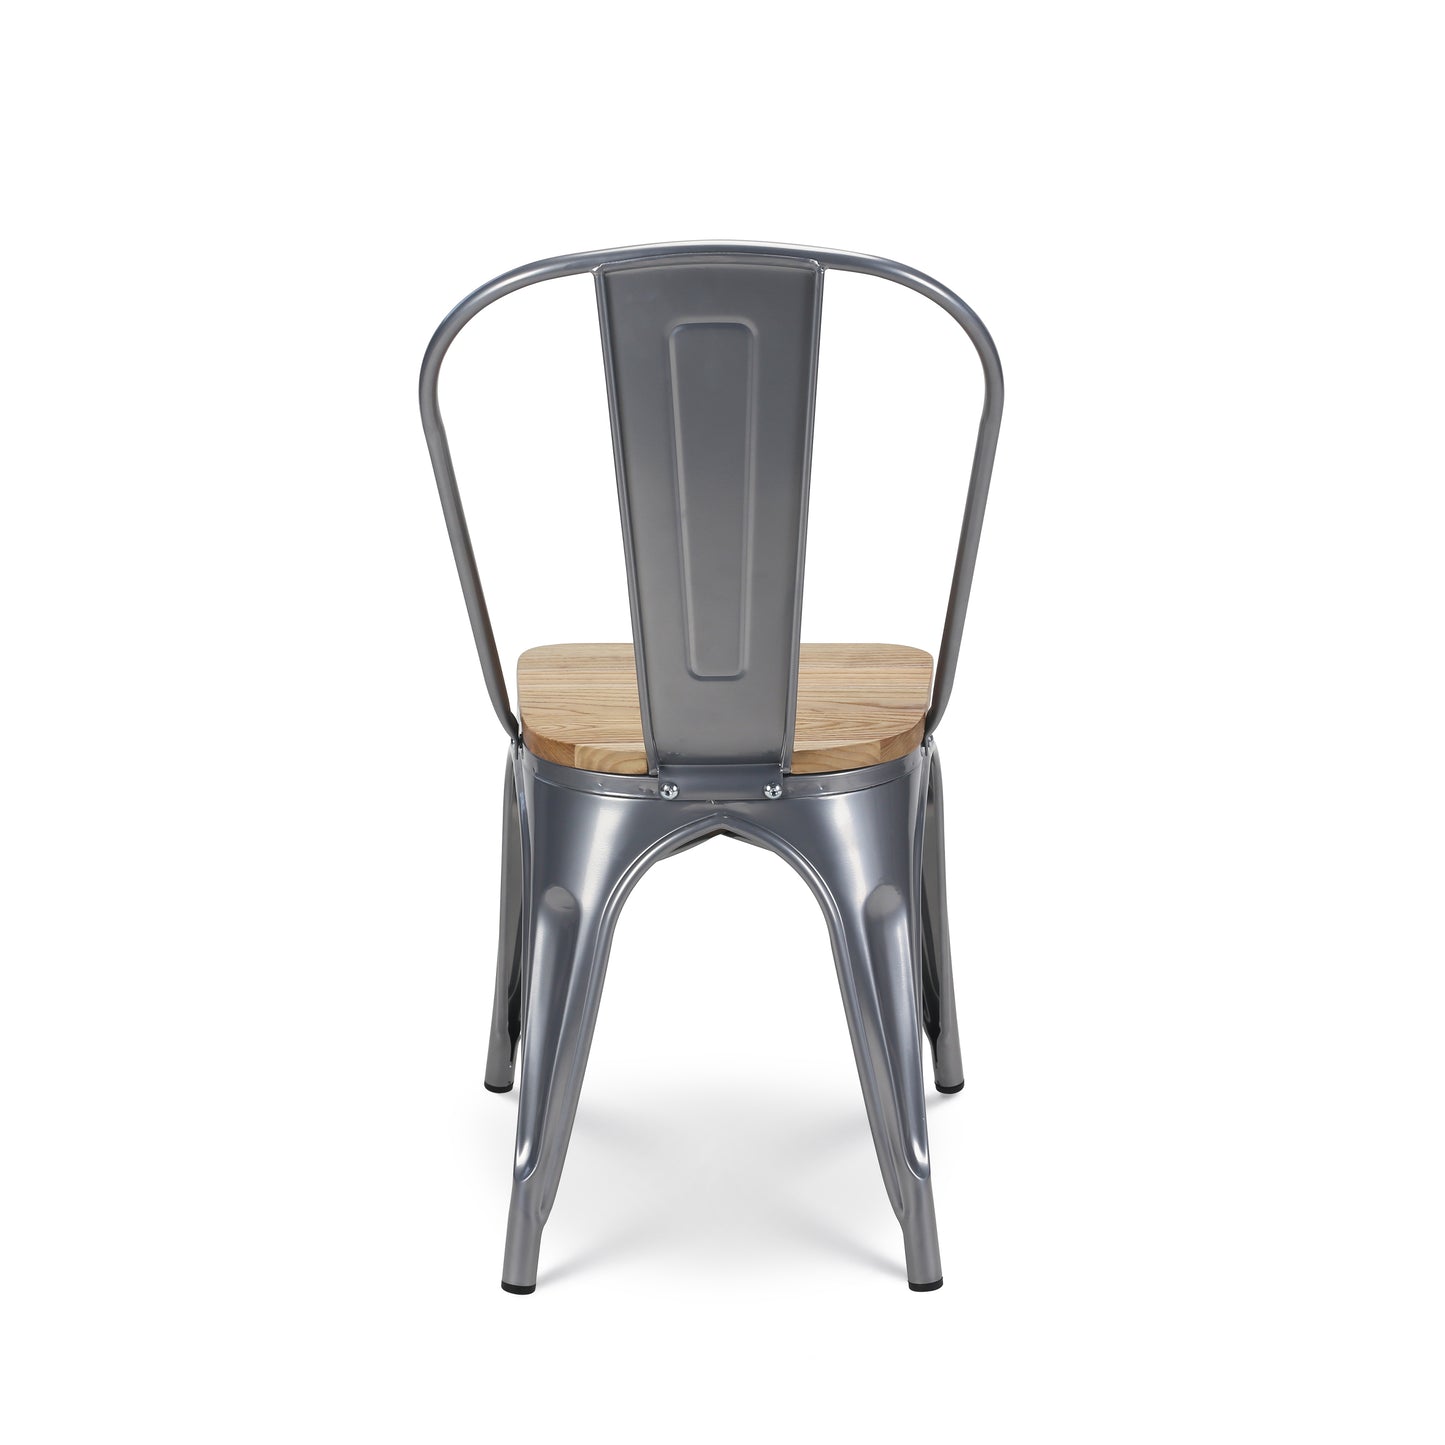 Lot de 4 chaises en métal gris argenté et assise en bois clair - Style industriel